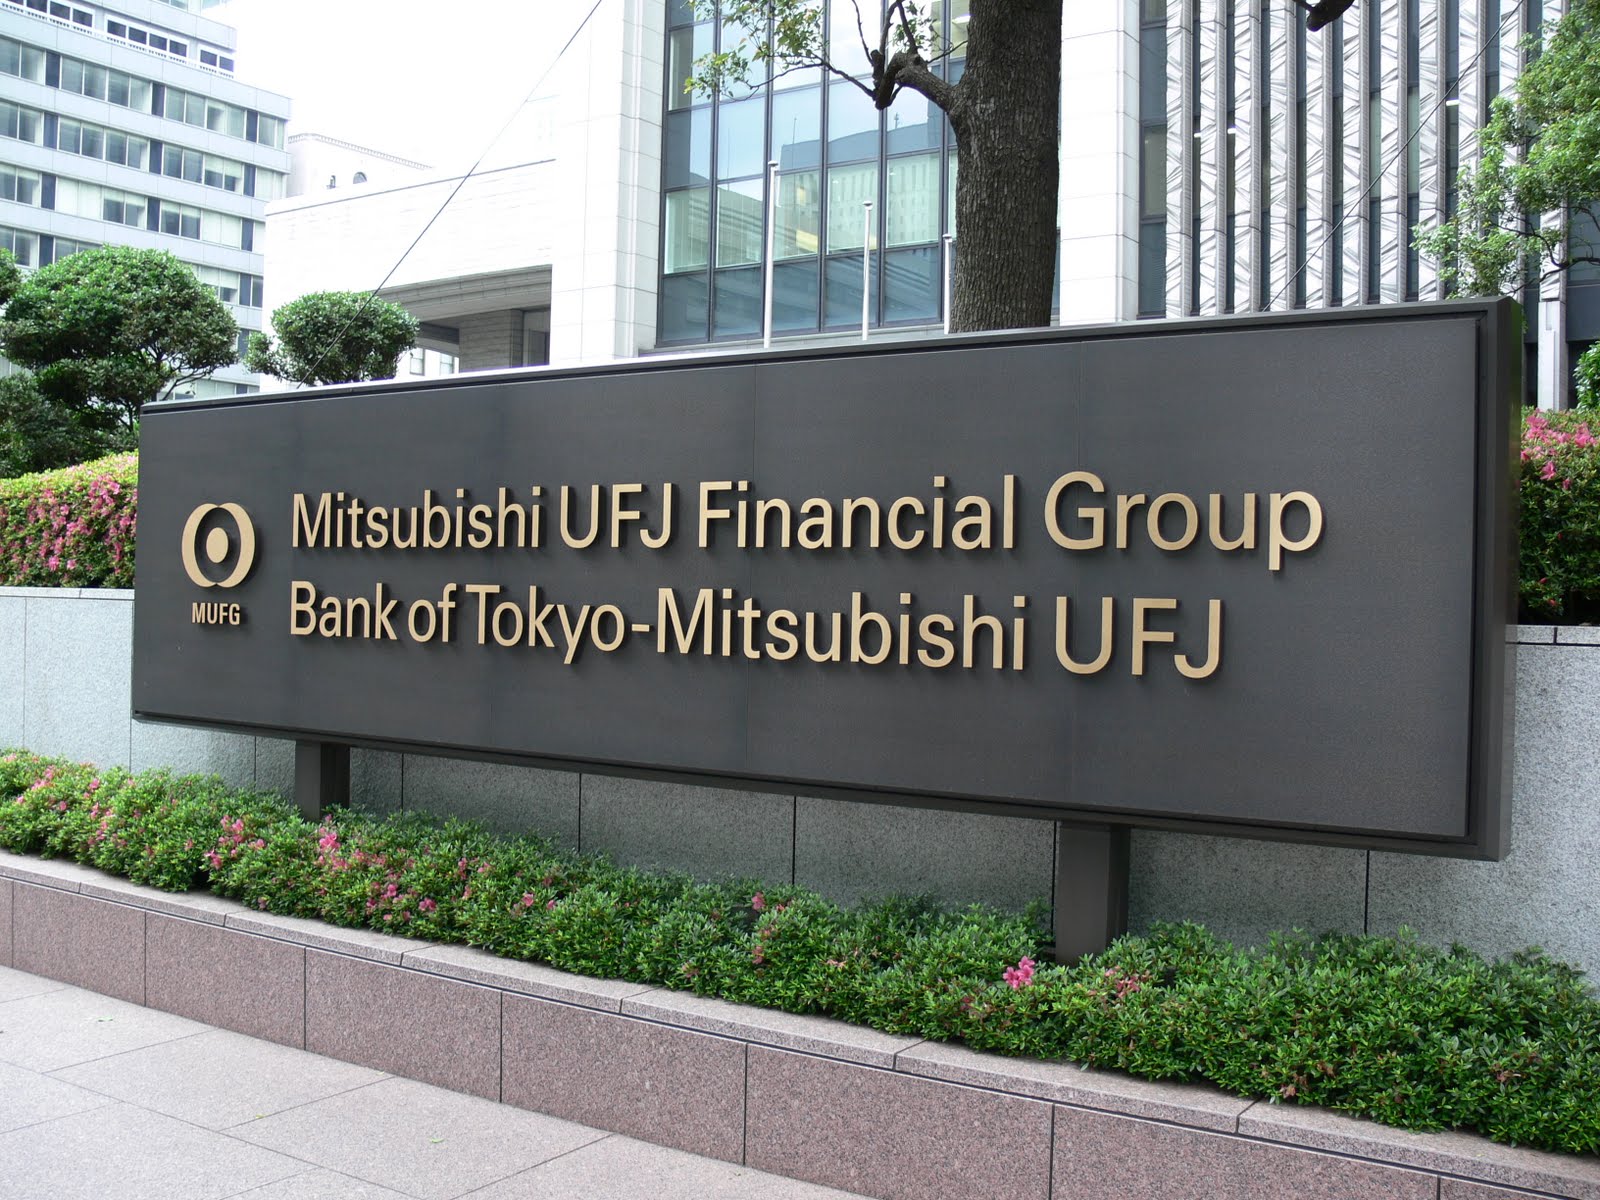 Mitsubishi bank cryptocurrency como transferir bitcoins a una cuenta bancaria